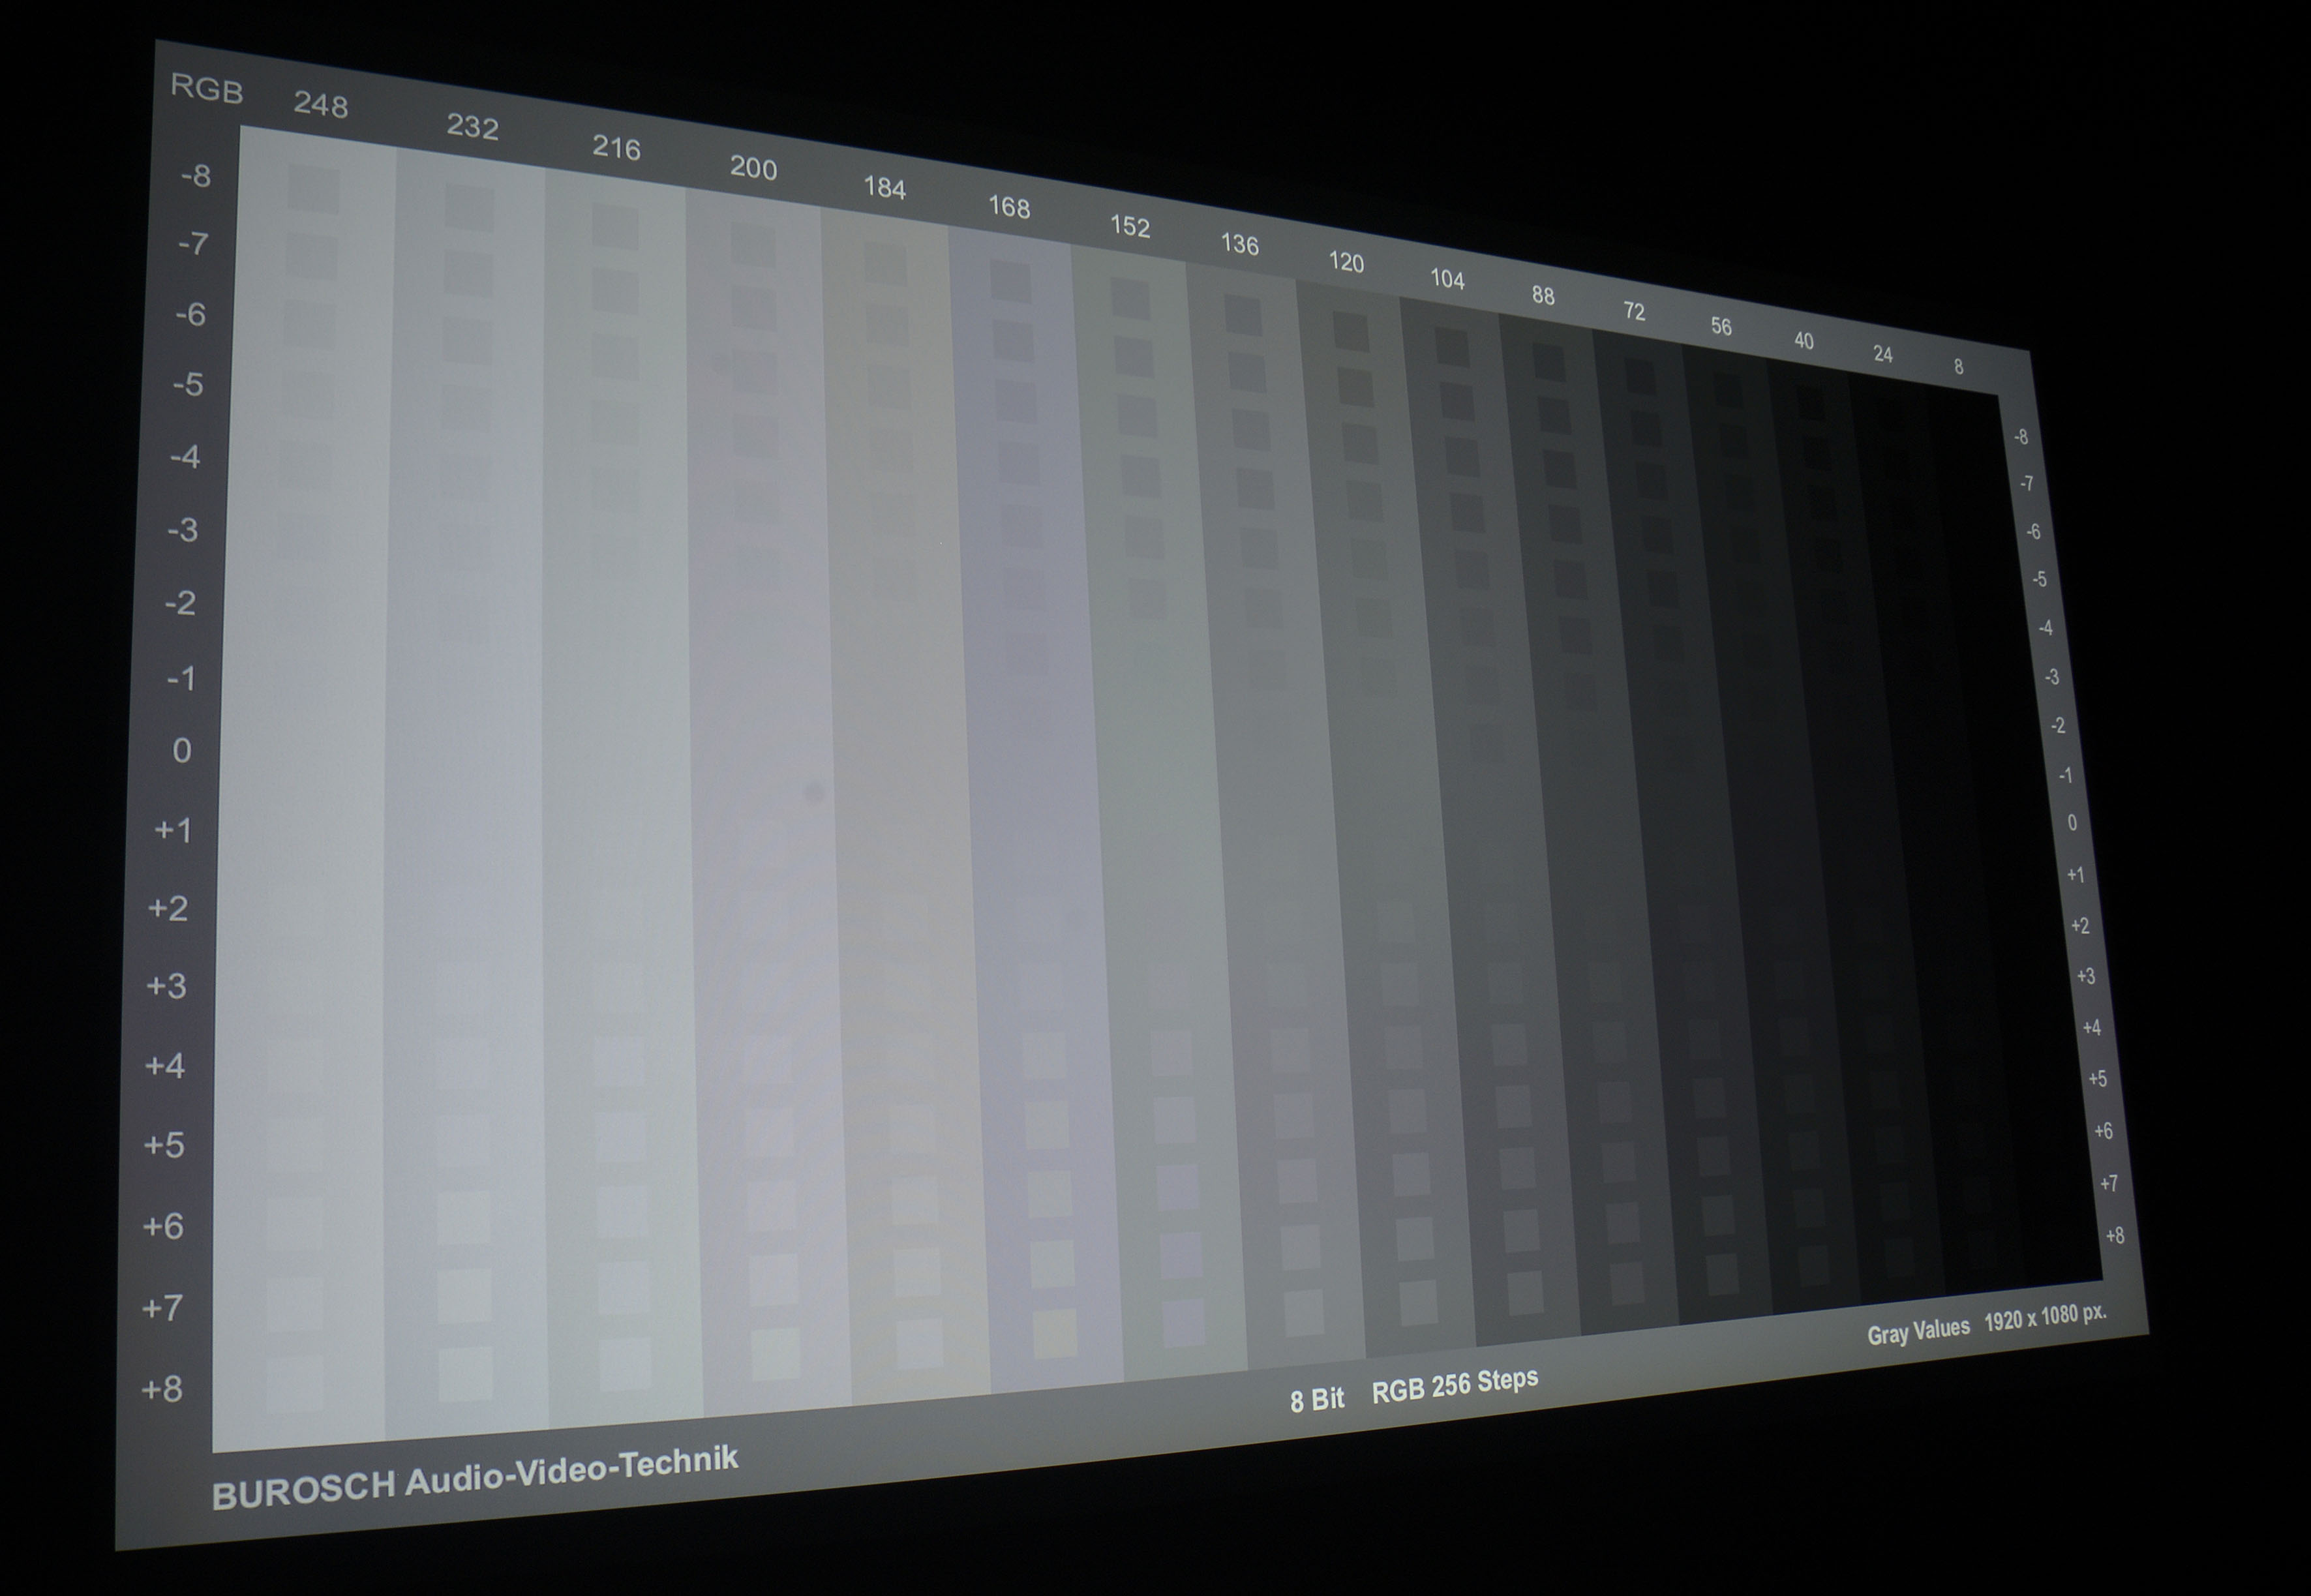 Bereits in der Werkseinstellung (Tabelle links) ist der Farbtemperaturverlauf bis 80 % im grünen Bereich. Darüber schlagen Rot und Blau aus. Nach der Kalibrierung sieht das Bild schon deutlich besser aus. Perfektion über alle Graustufen erlaubt das Testgerät leider nicht, weil 80 und 90 IRE nicht in den Griff zu bekommen sind. Die Folge sind leichte Verfärbungen in hellen Bildbereichen. Das RGB-Niveau trifft bei 100 IRE (Weiß) seine Vorgaben sehr gut. Die Farbtemperatur ist mit 6514 Kelvin (D65) annähernd optimal.